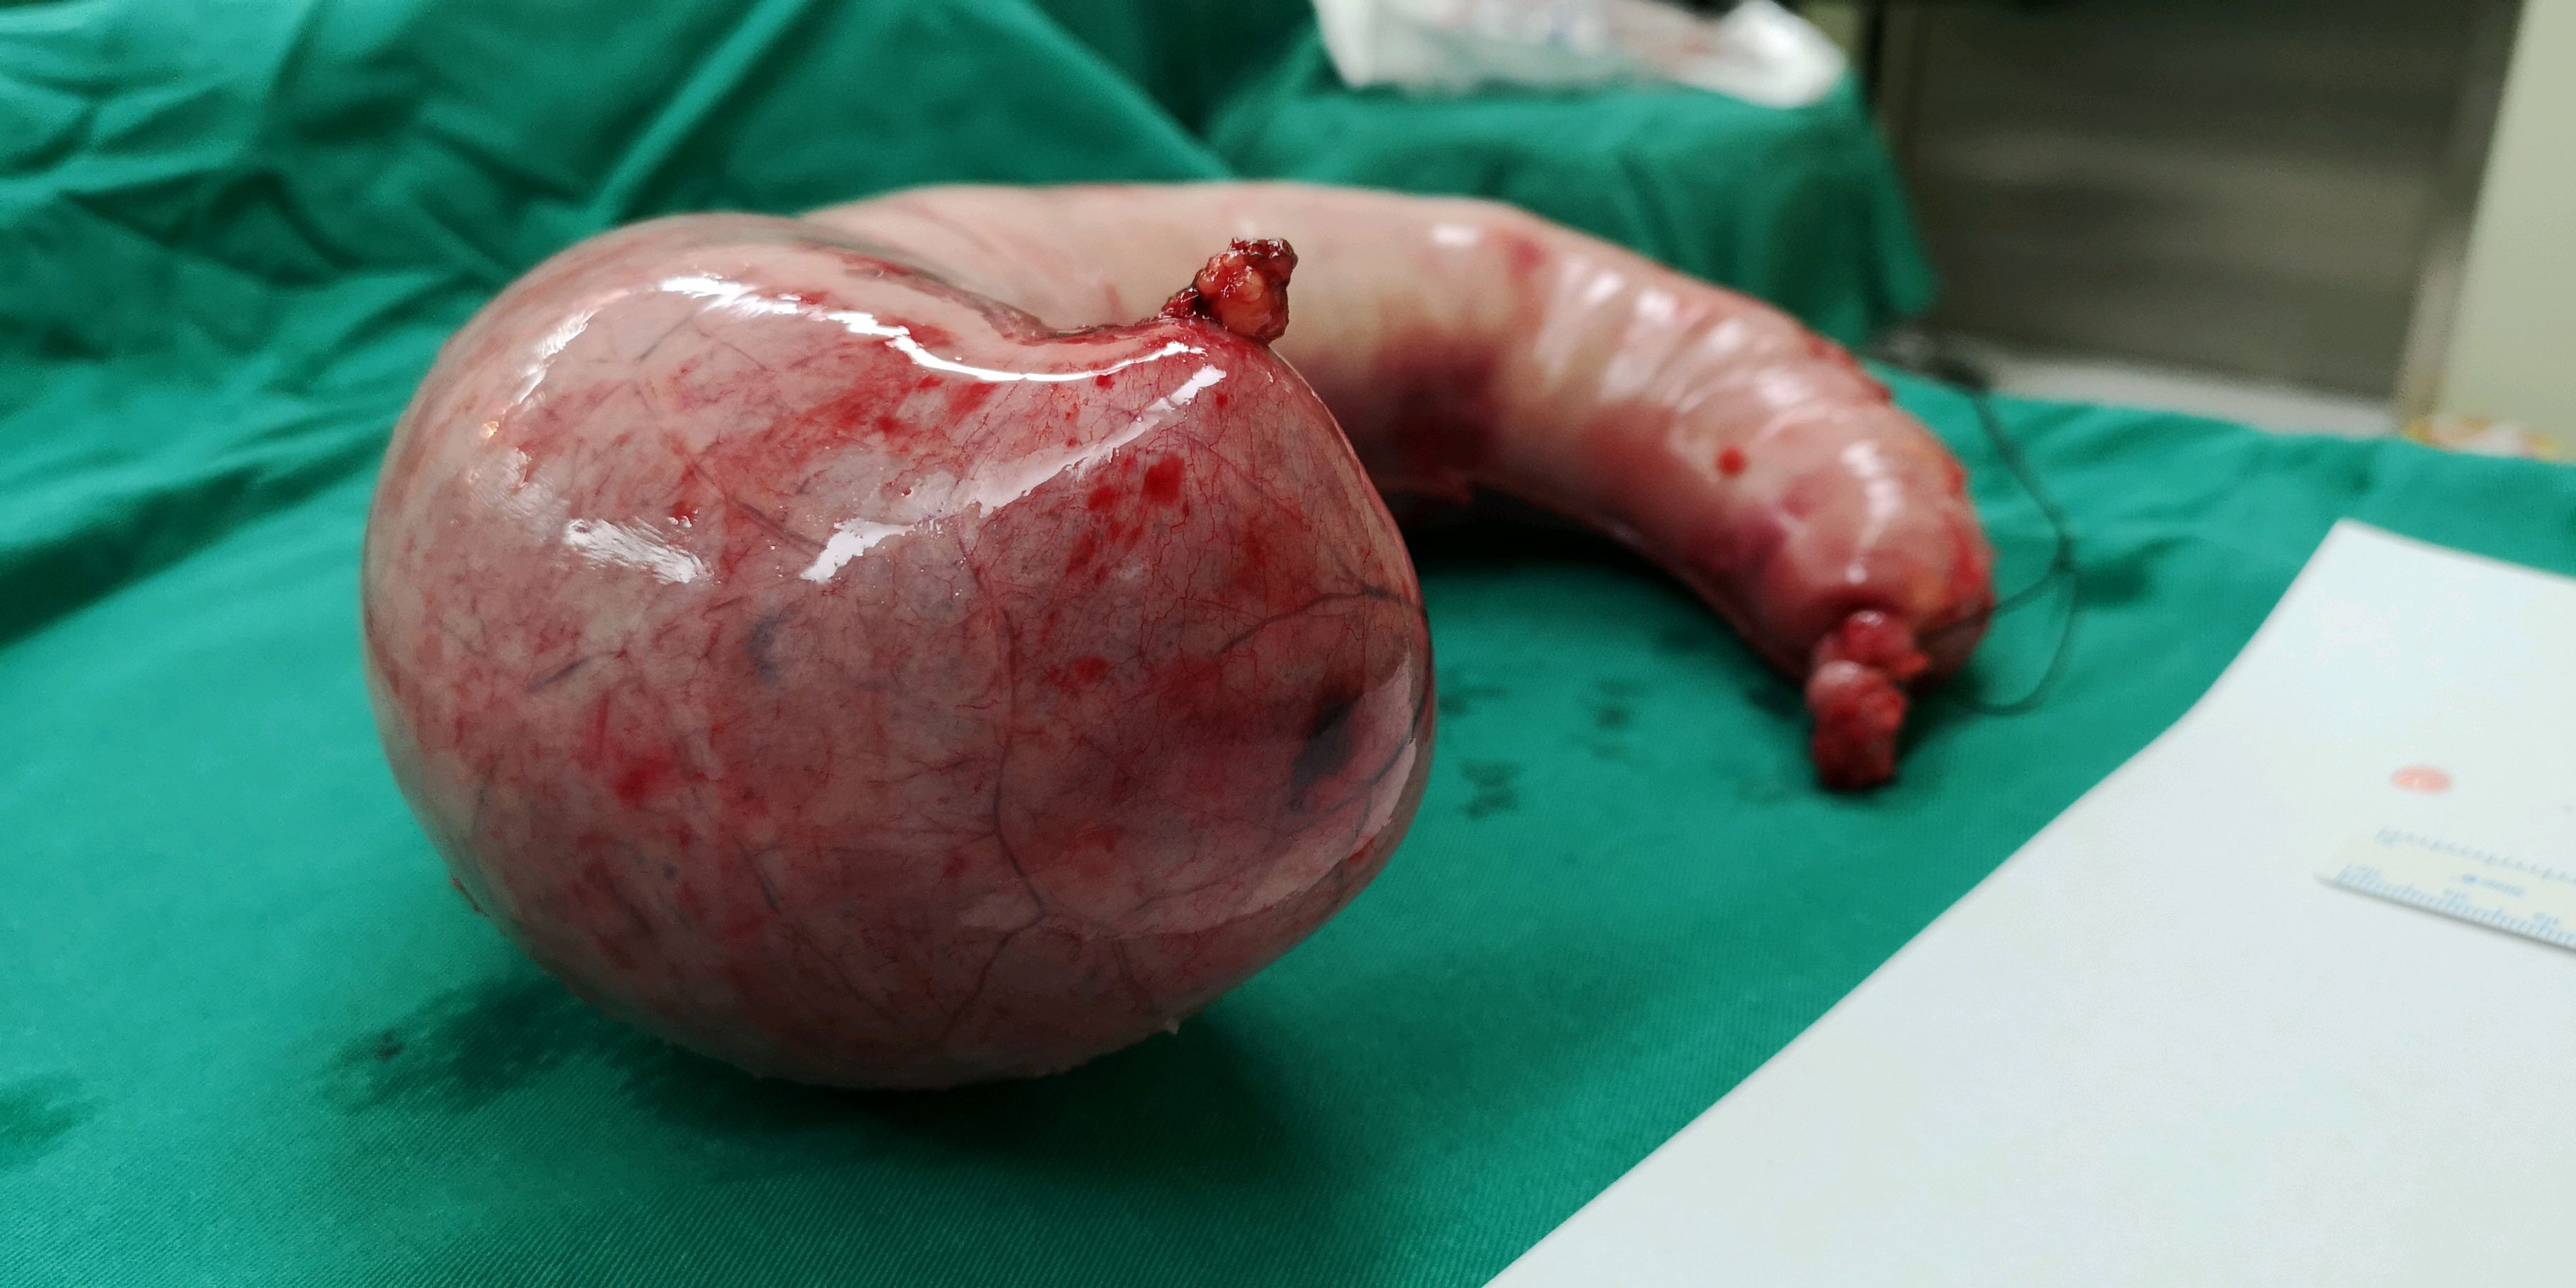 袖状胃空肠旷置手术图片